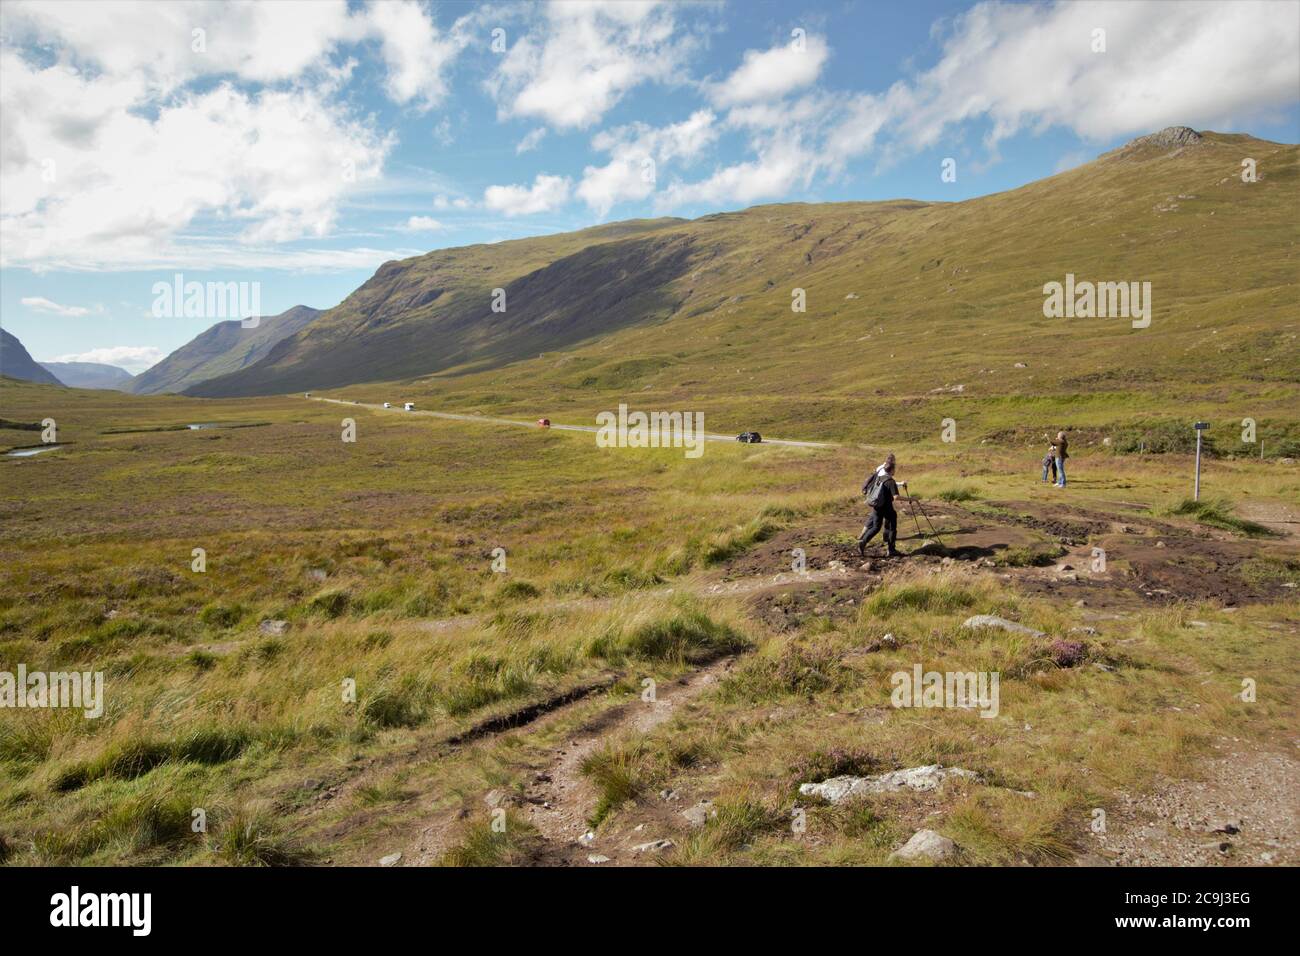 Tourists walking in the Scottish Highlands, Glencoe, Scotland, UK Stock Photo